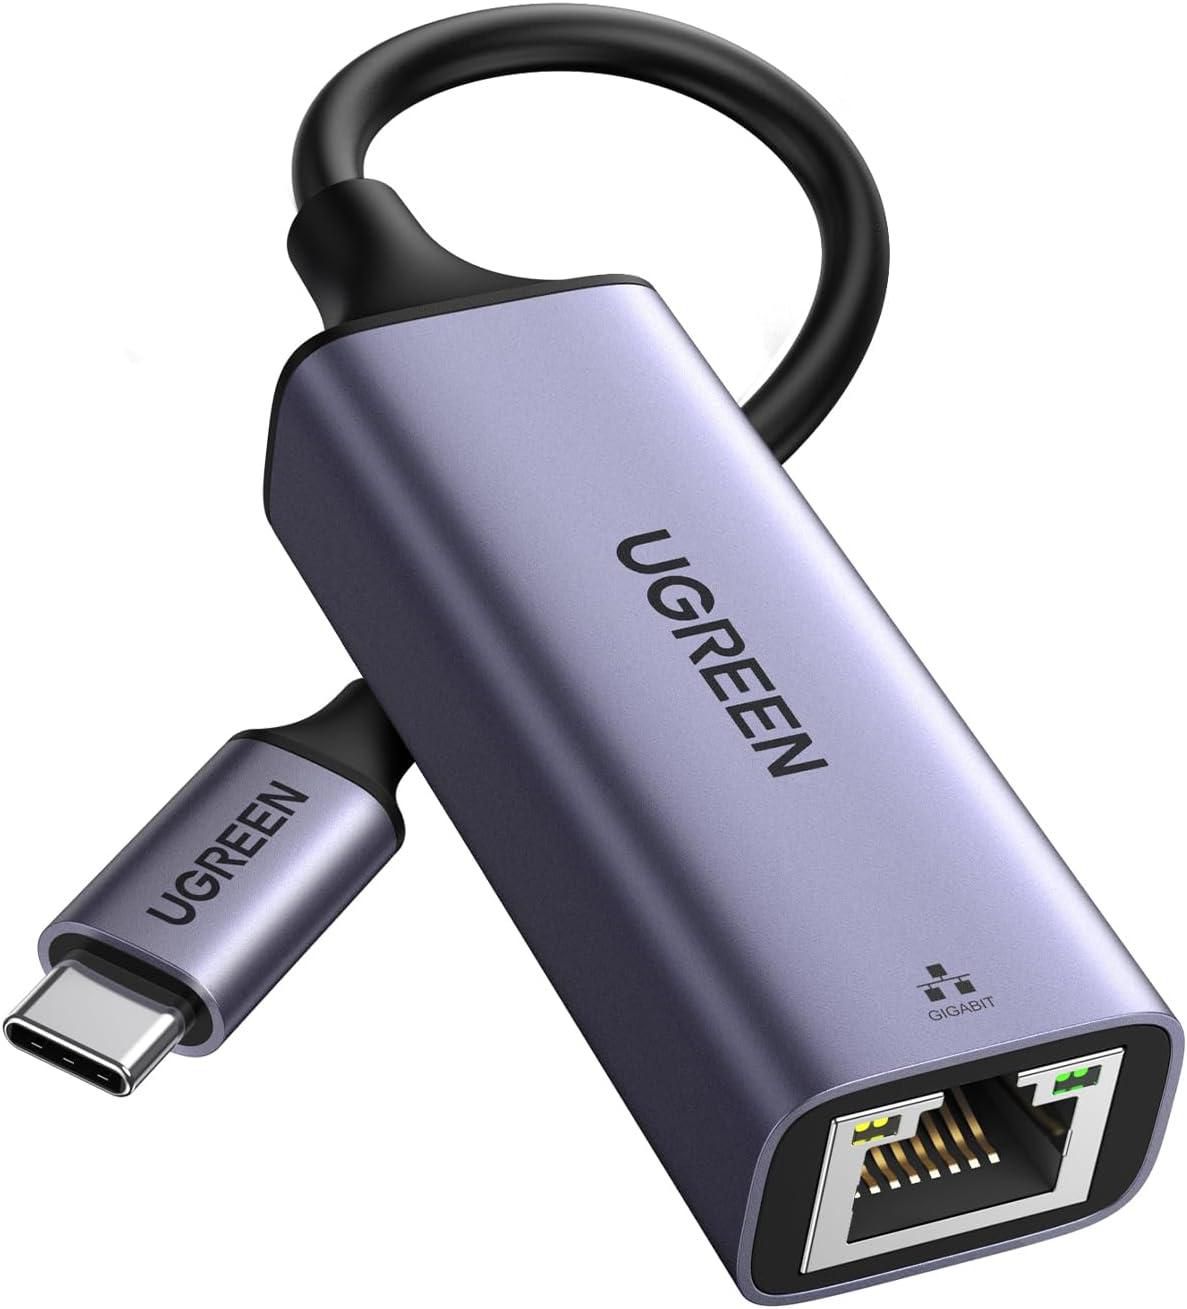 محول USB فئة C الى ايثرنت يوجرين للاجهزة المزودة بمنفذ فئة C - رمادي